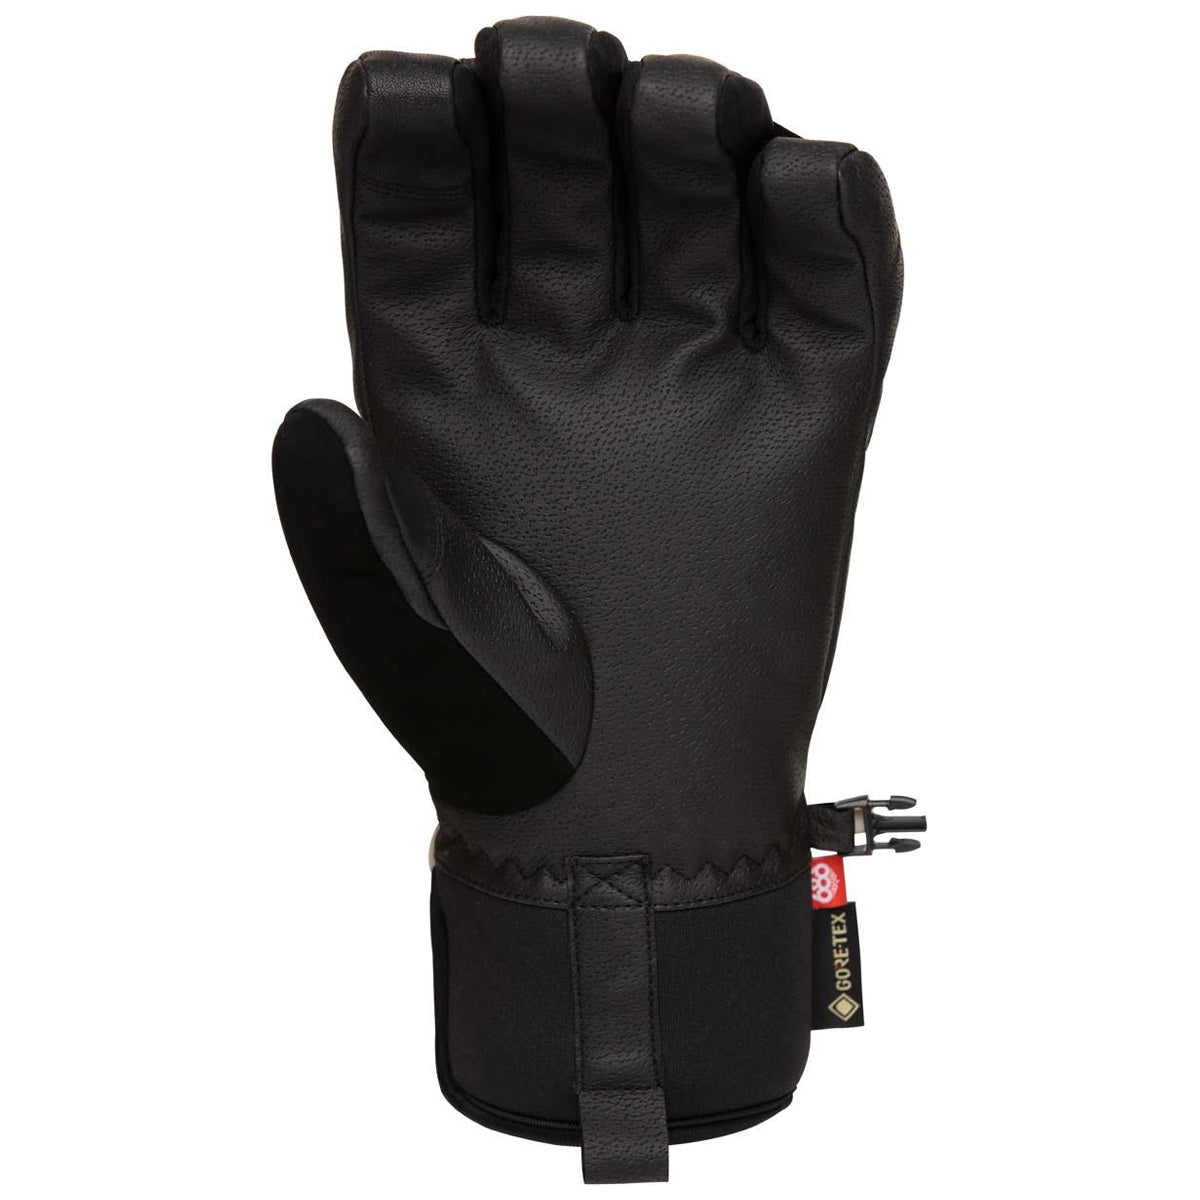 686 Gore Linear Under Cuff Snowboard Gloves - Black image 2